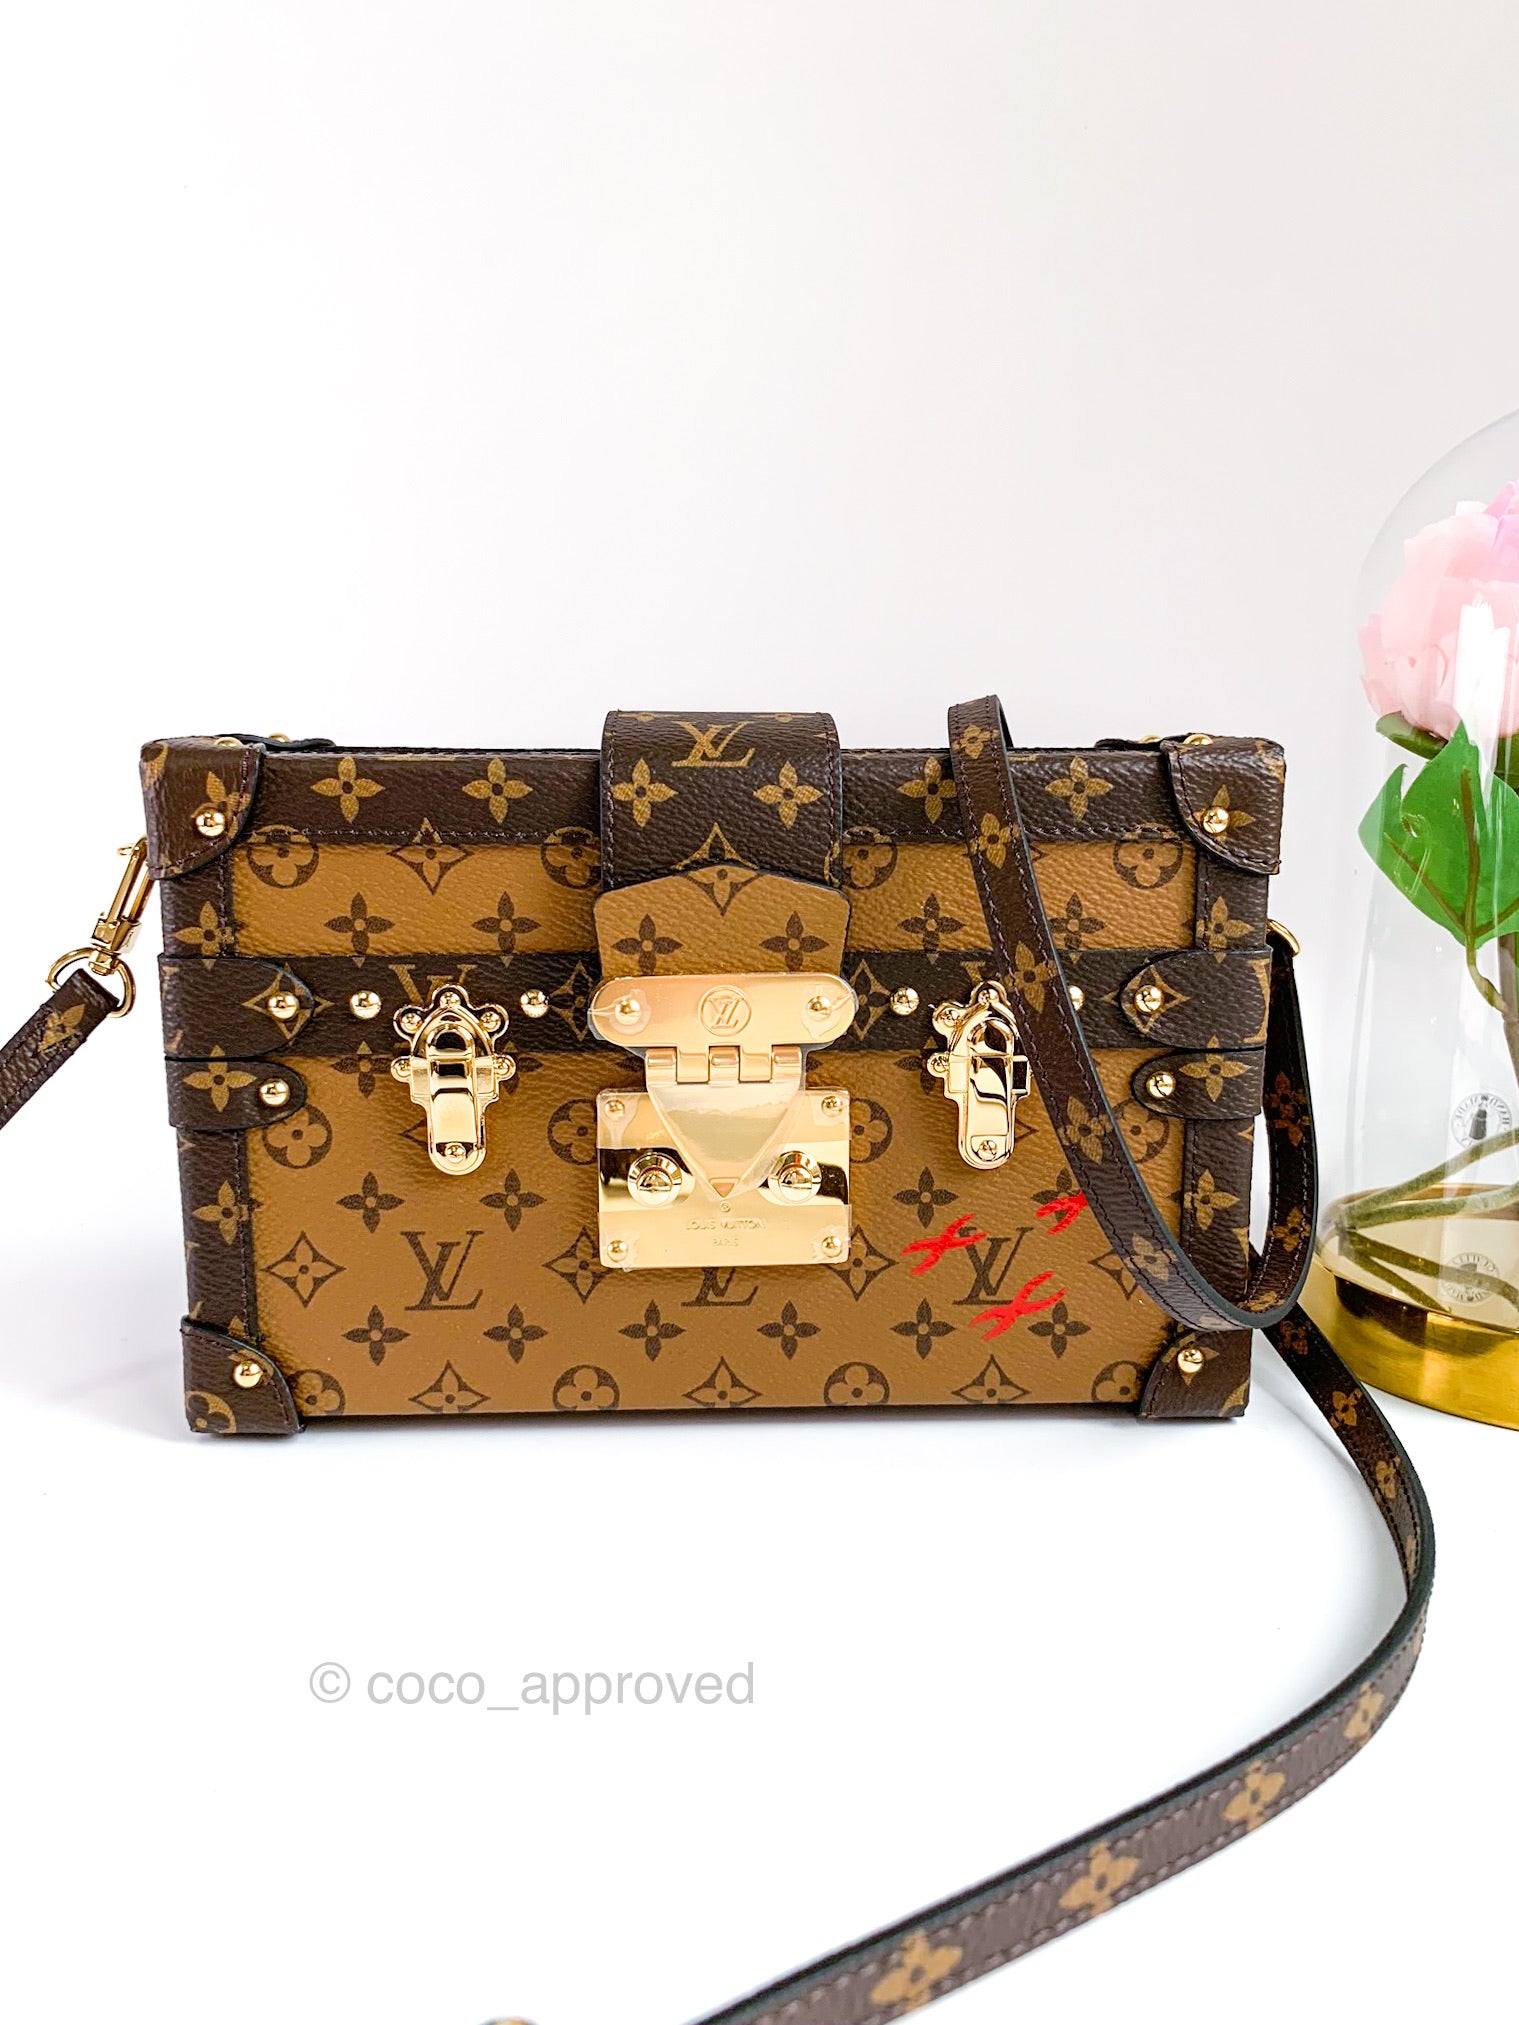 Sold at Auction: LOUIS VUITTON Petite Malle Monogram Trunk Handbag w/  Shoulder Strap